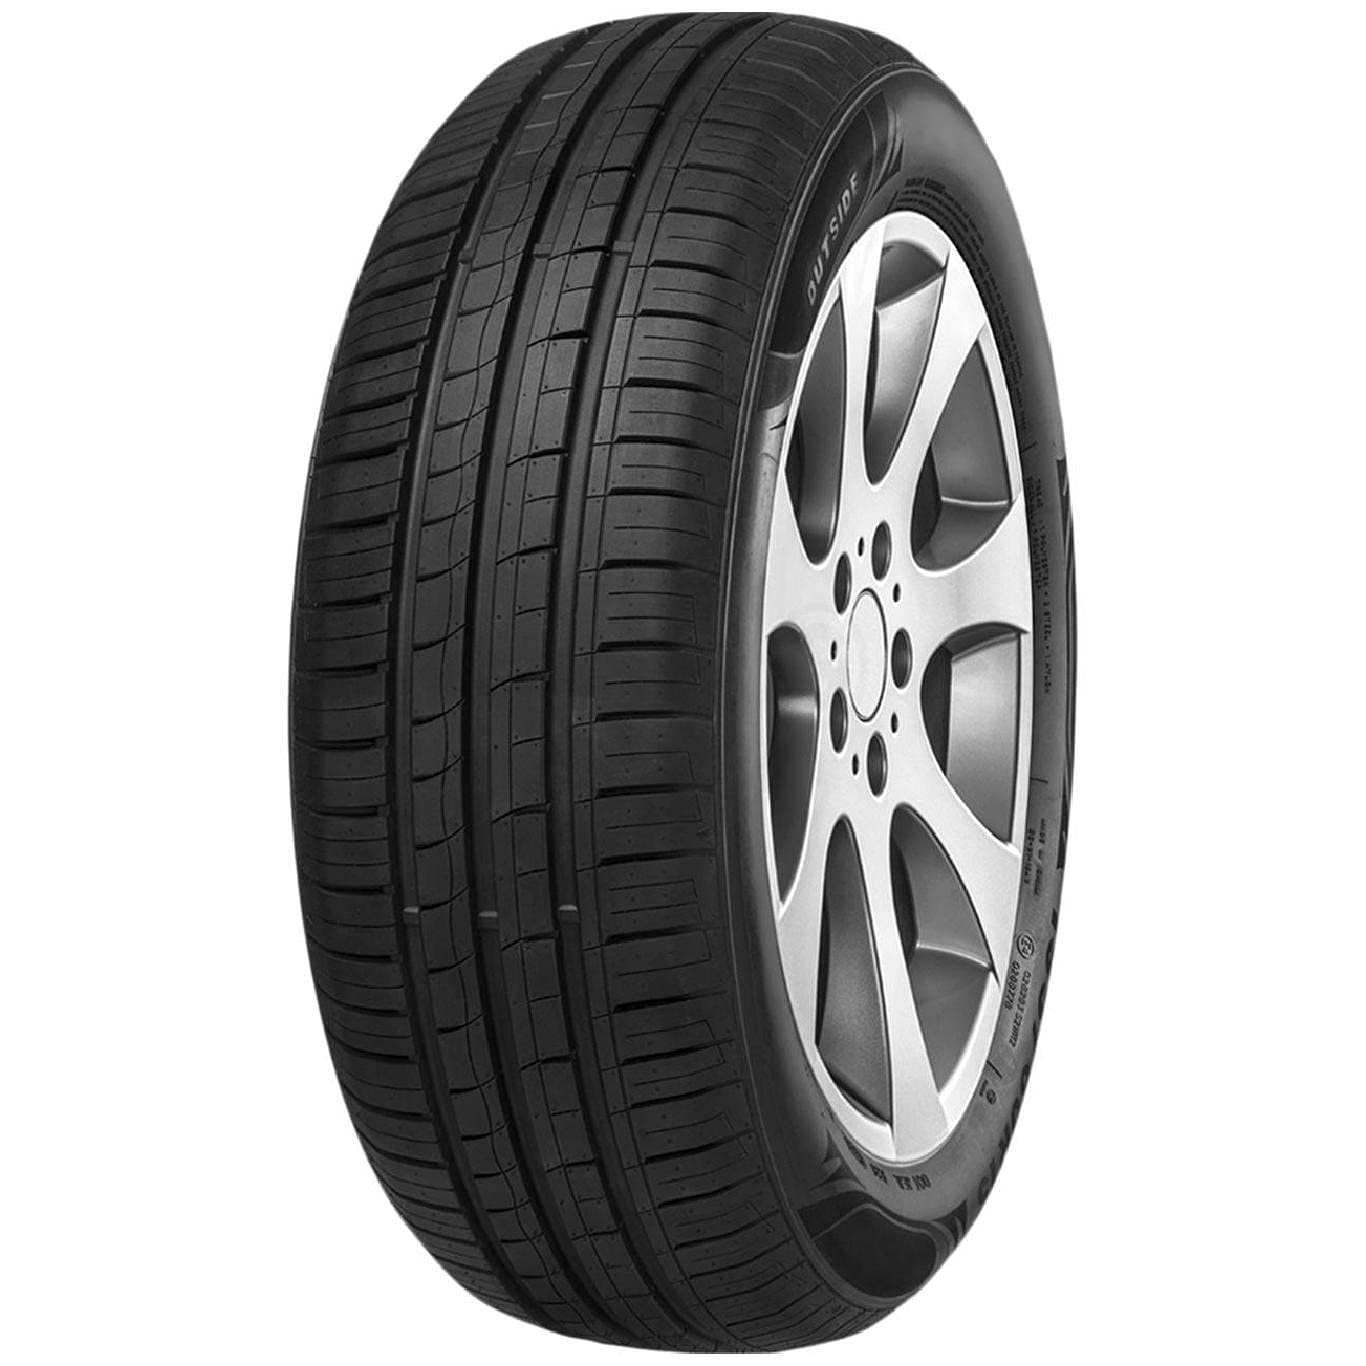 Reifen pneus Imperial Ecodriver 4 209 145 70 R13 71T TL sommerreifen autoreifen von Imperial